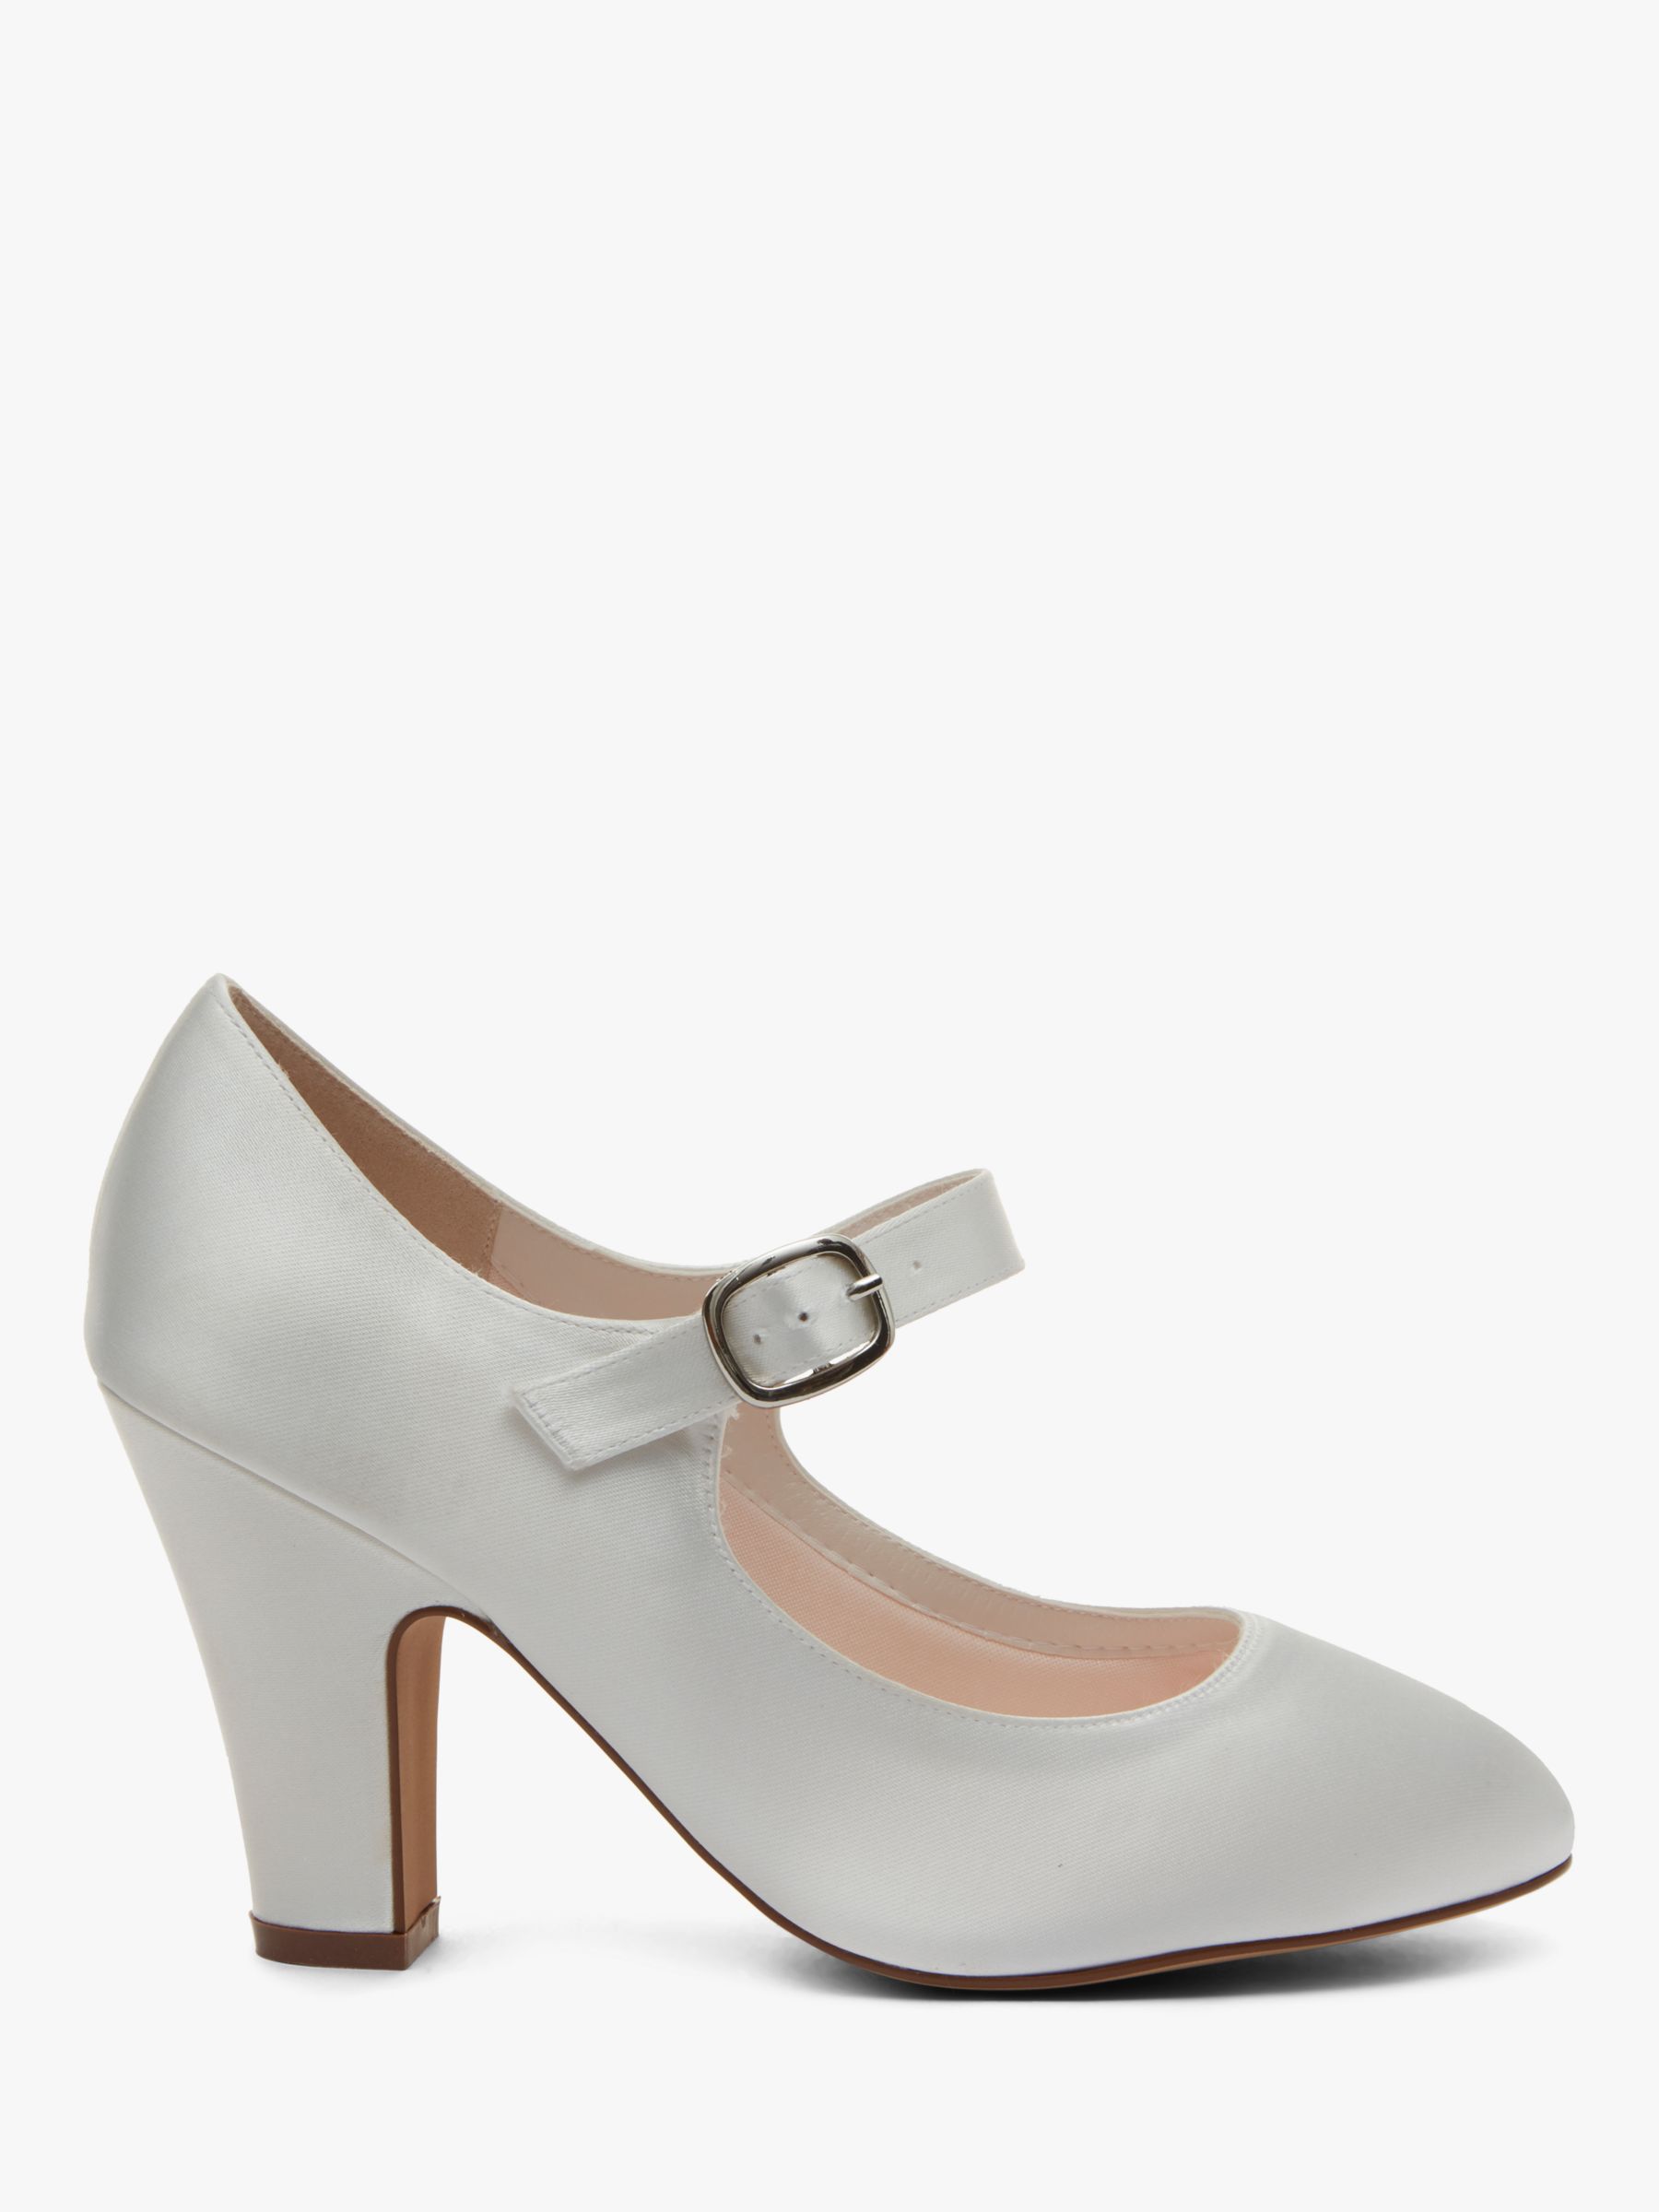 Glamorous Double Strap Mary Jane Mid Heeled Shoes